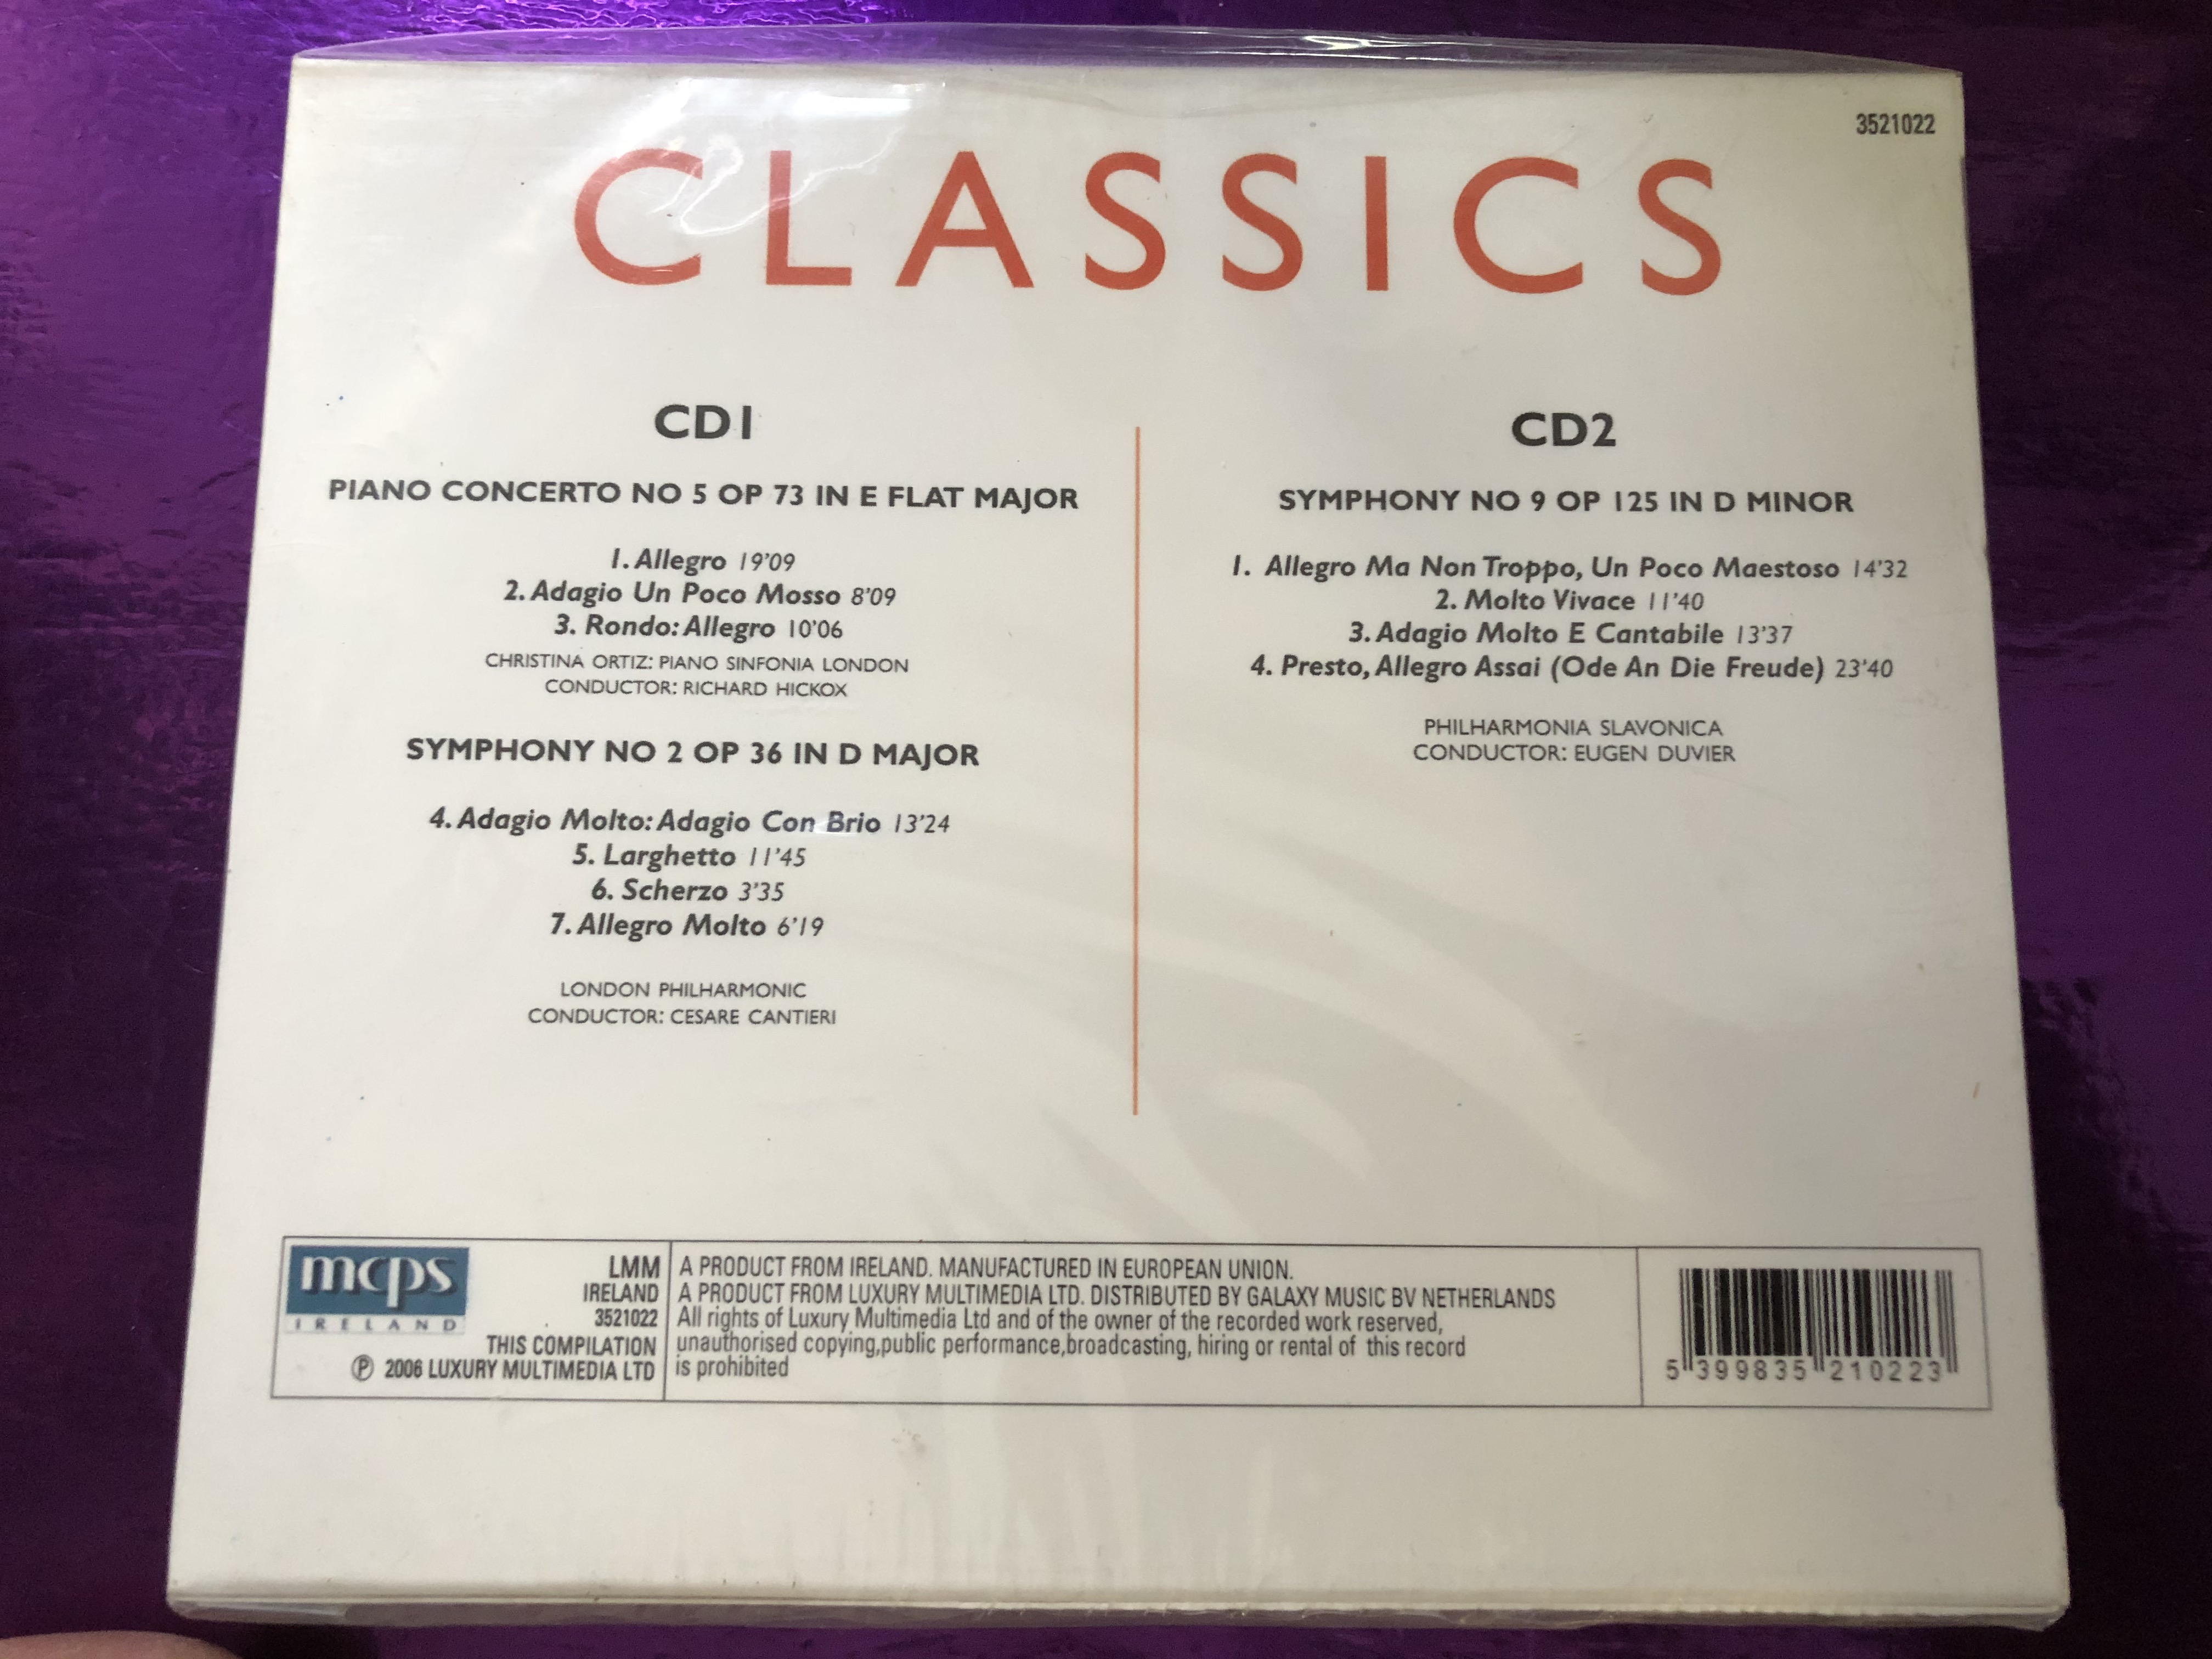 classics-l.-v.-beethoven-pianoconcerto-no.-5-symphony-no.-2-symphony-no.-9-lmm-2x-audio-cd-2006-3521022-2-.jpg